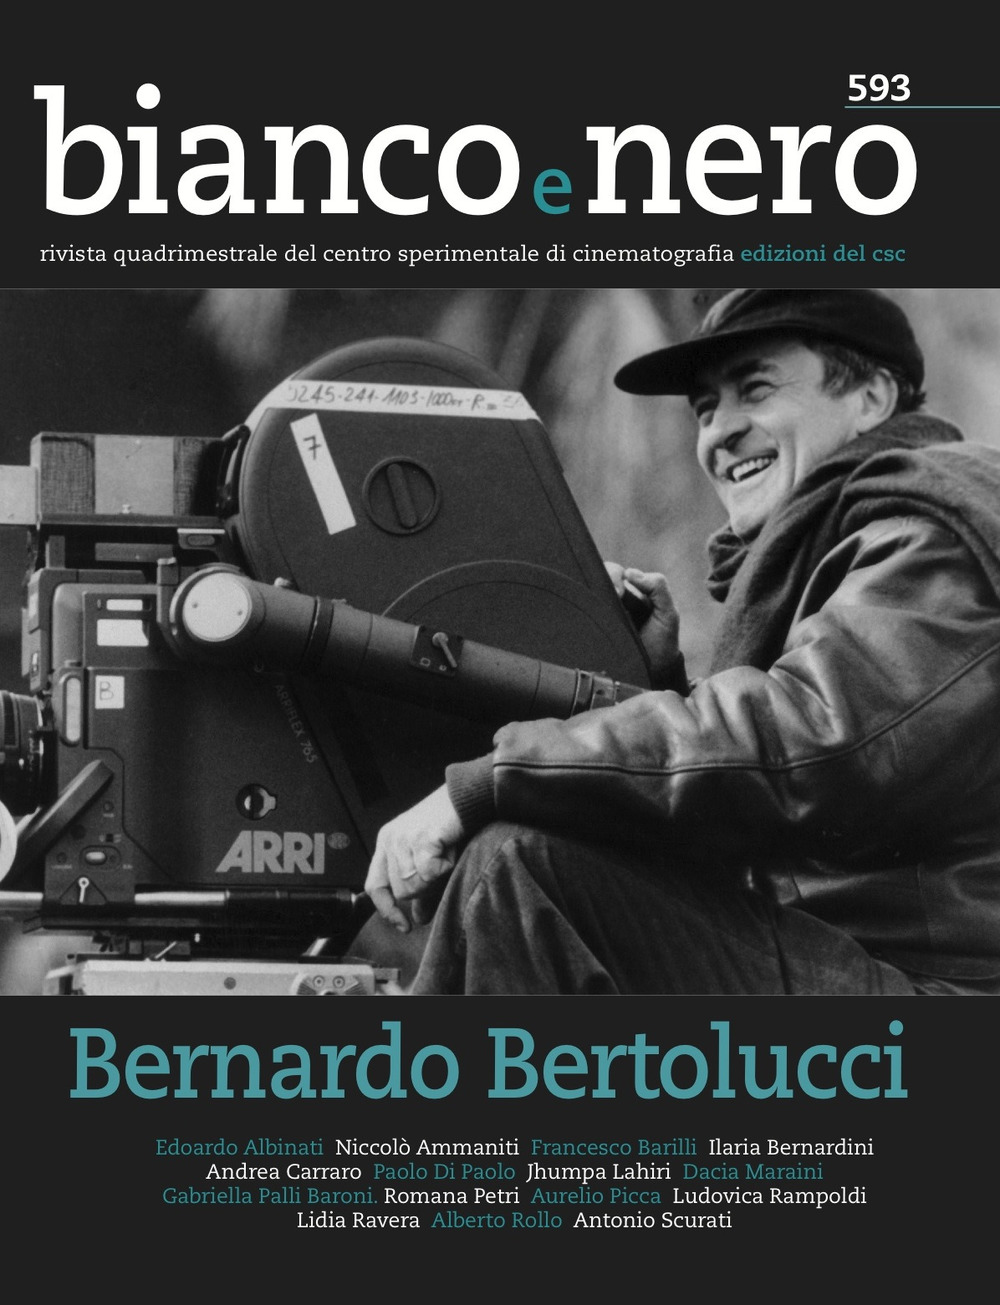 Image of Bianco e nero. Rivista quadrimestrale del centro sperimentale di cinematografia (2019). Vol. 593: Bernardo Bertolucci.